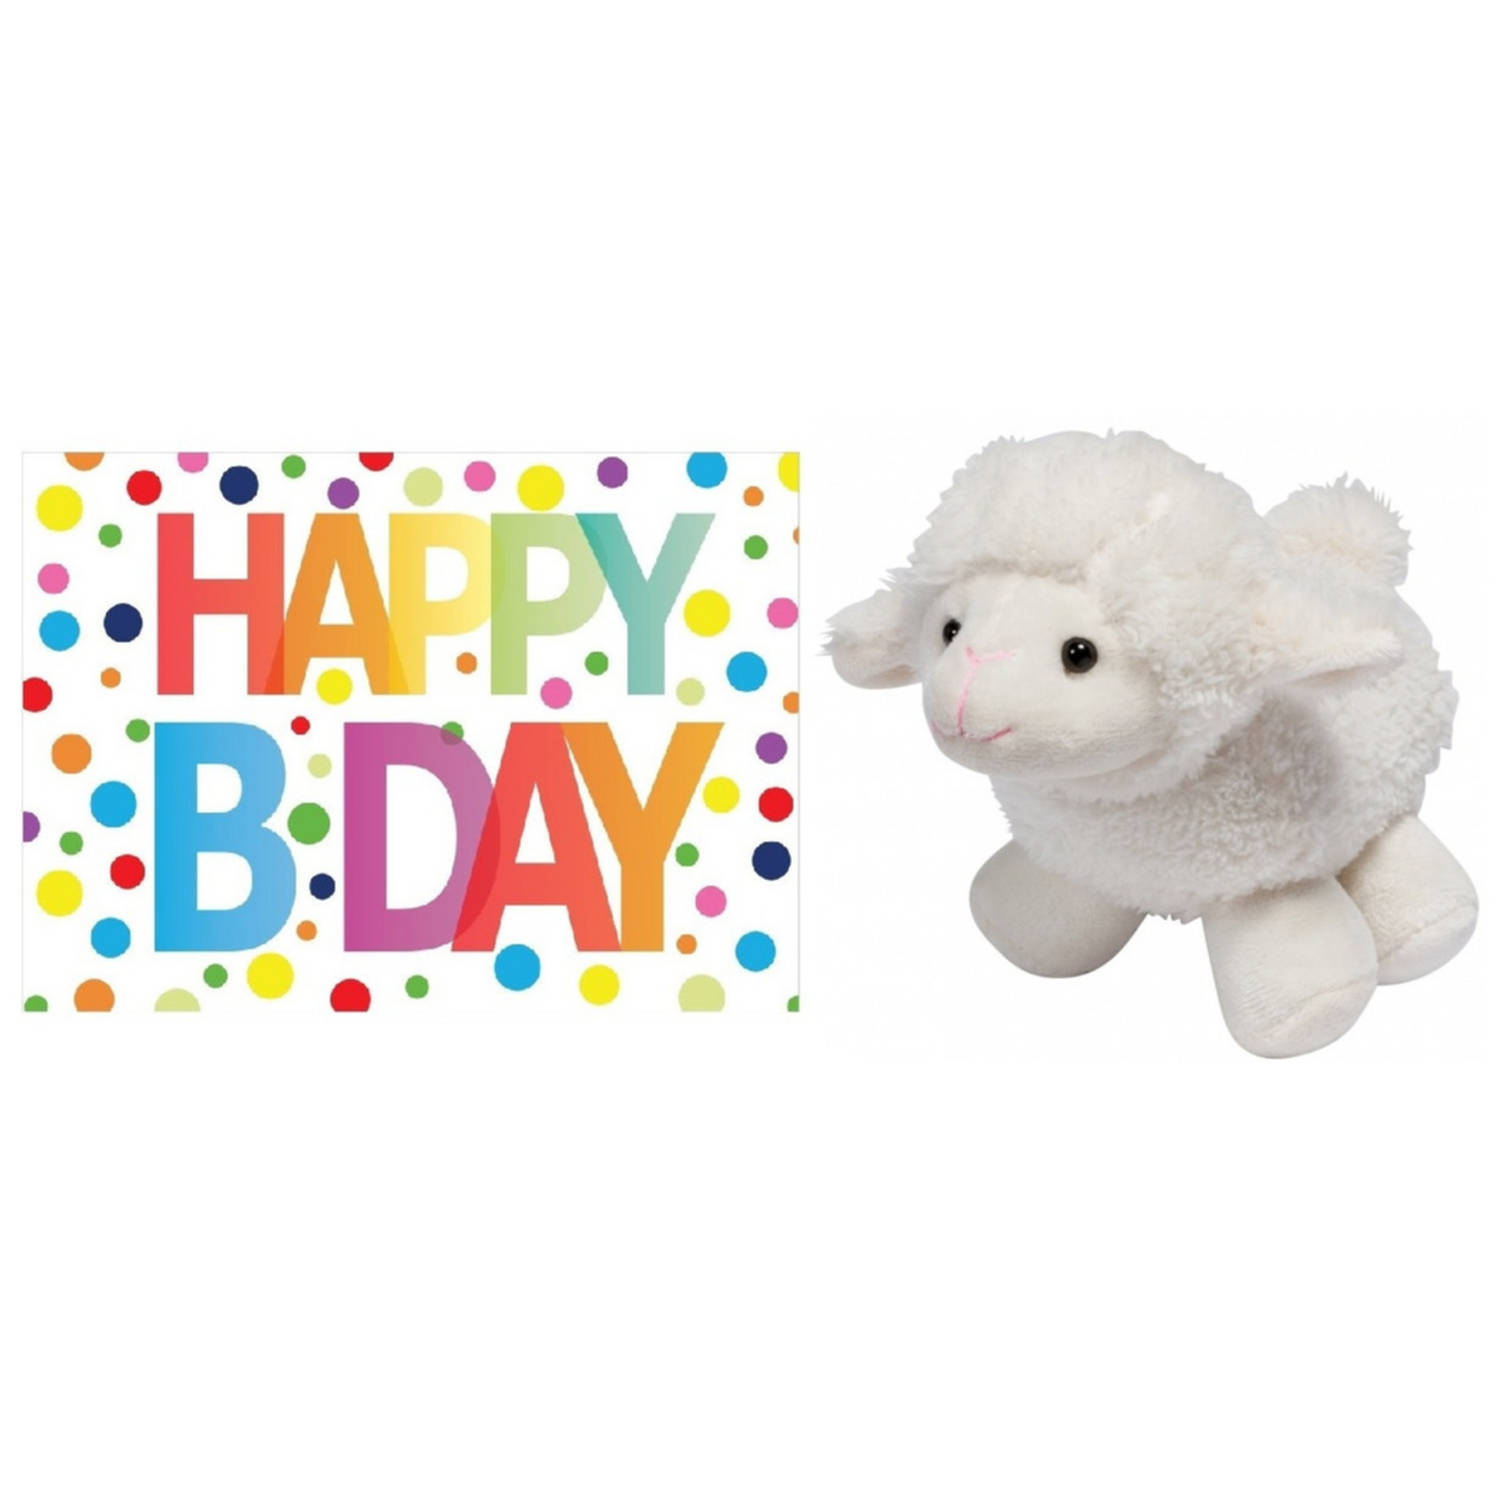 Pluche knuffel lammetje-schaap 16 cm met A5-size Happy Birthday wenskaart Knuffel boederijdieren